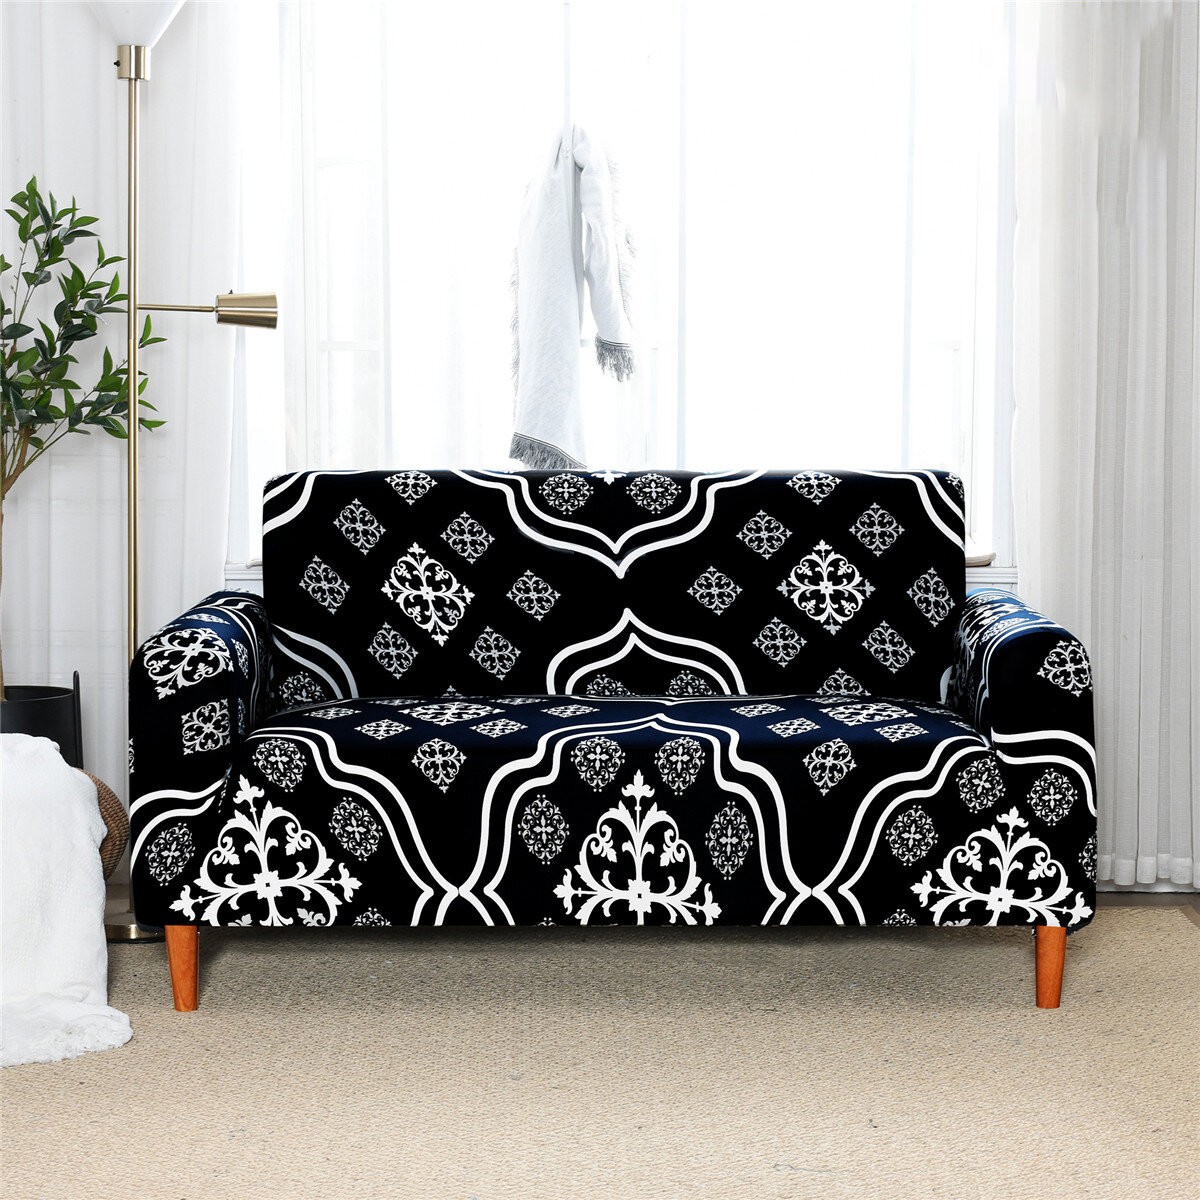 3 مقاعد غطاء أريكة مرن طباعة عالمية حامي مقعد غطاء أريكة ممتد غطاء أريكة ديكور المنزل والمكتب